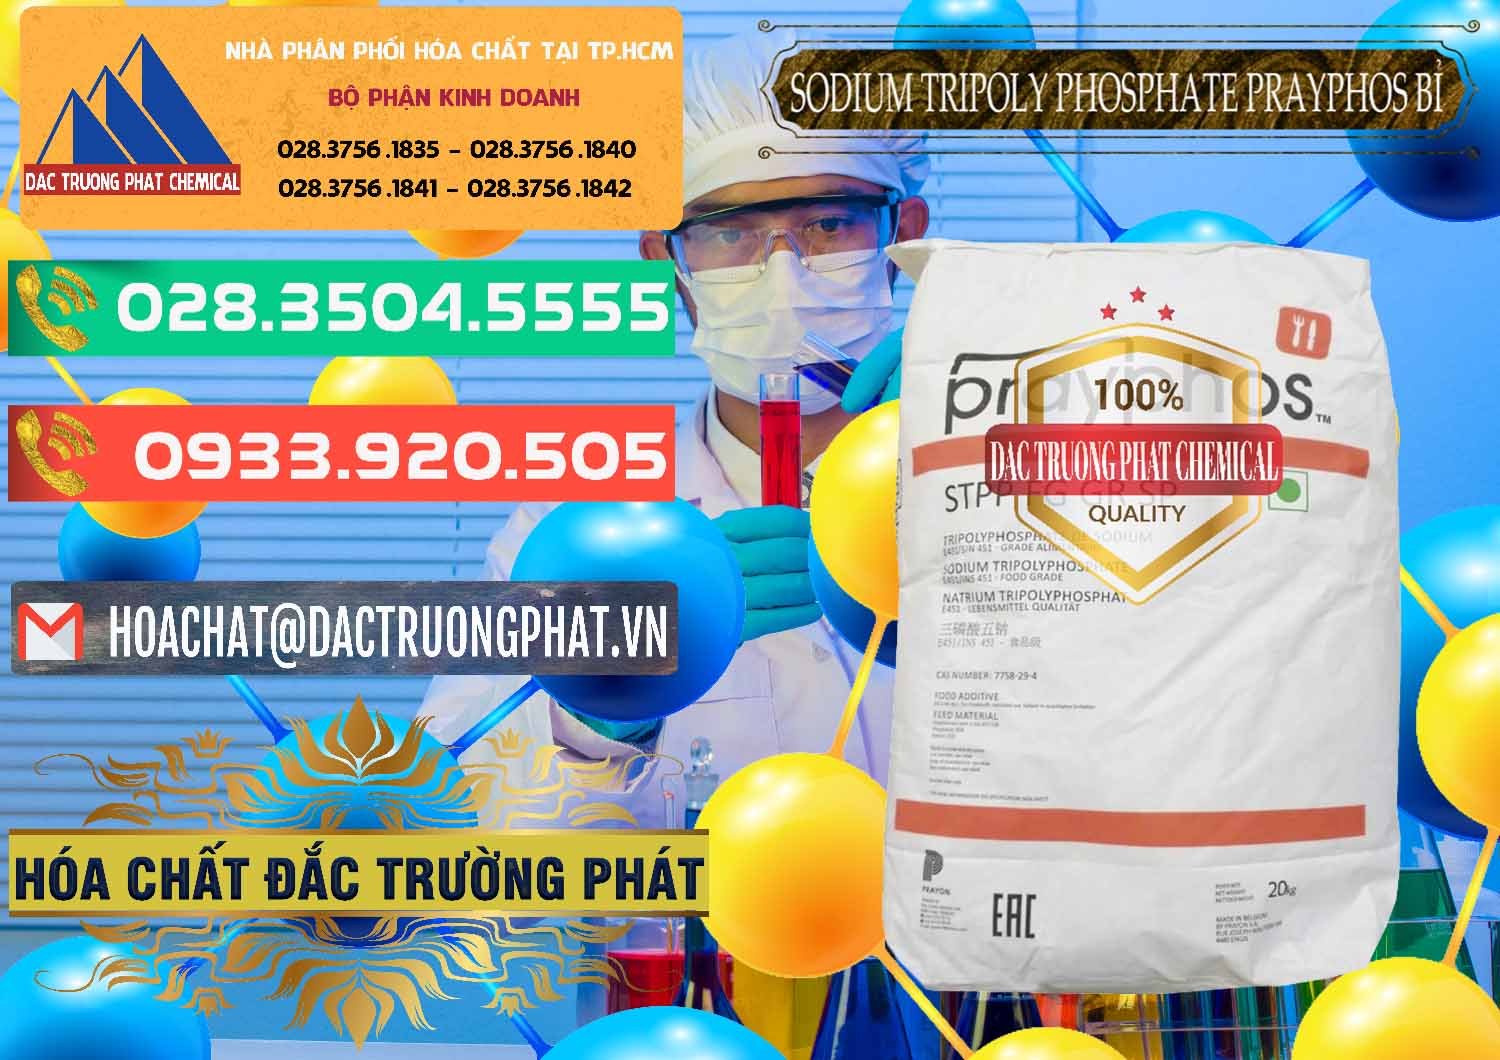 Cty chuyên nhập khẩu ( bán ) Sodium Tripoly Phosphate - STPP Prayphos Bỉ Belgium - 0444 - Cung cấp _ kinh doanh hóa chất tại TP.HCM - congtyhoachat.com.vn